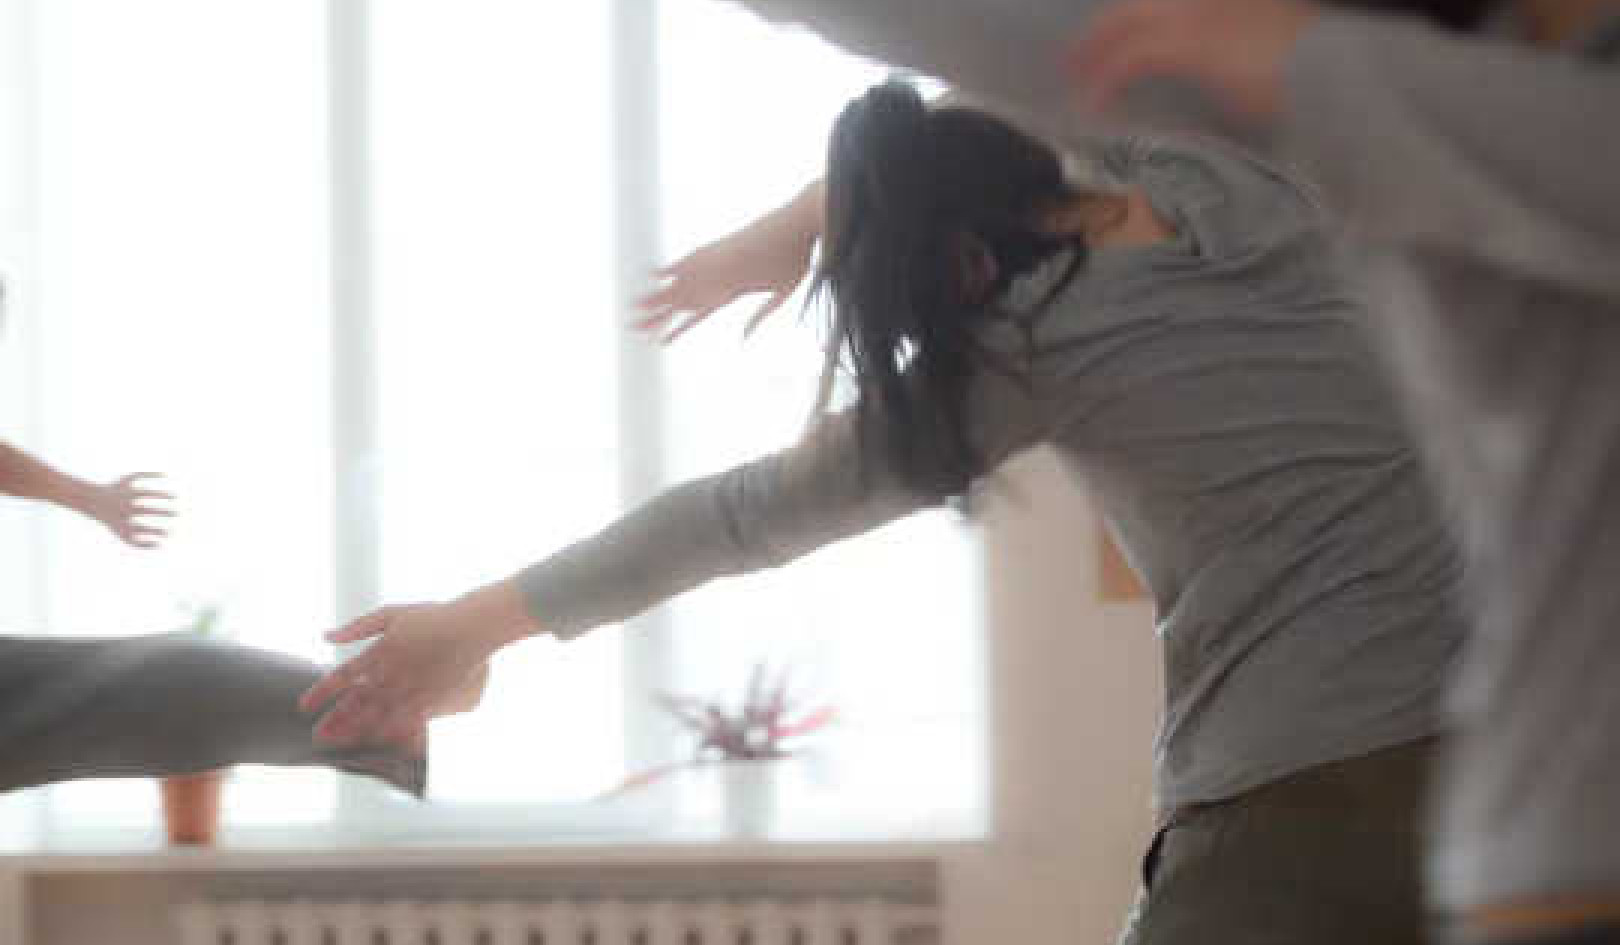 Chánh niệm và khiêu vũ có thể cải thiện sức khỏe tâm thần như thế nào